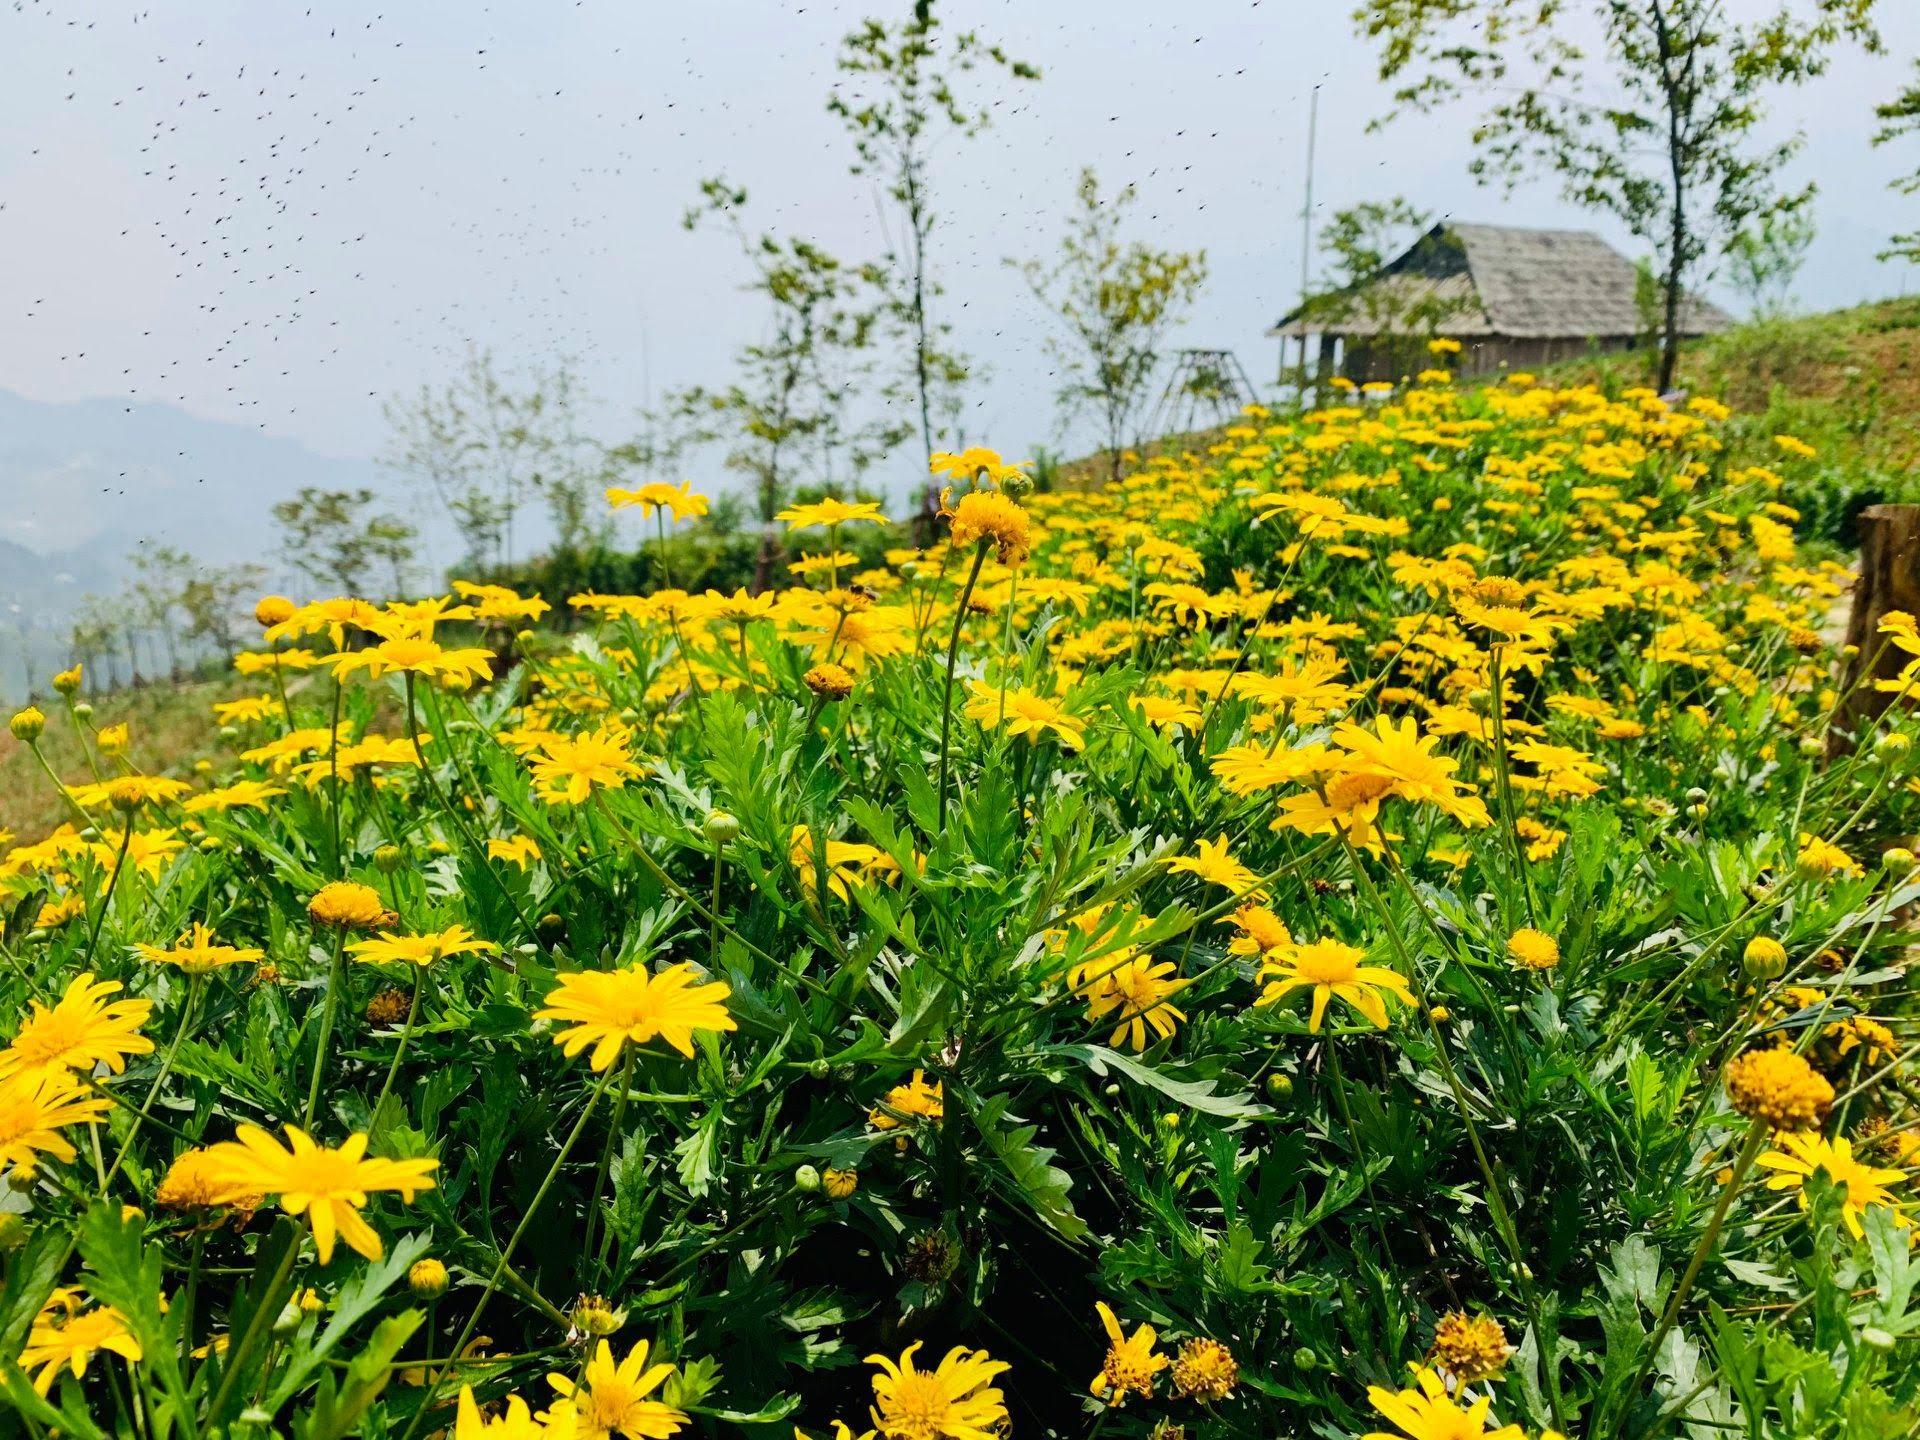 Lên đỉnh Fansipan mùa tháng 4 để ngắm ngàn hoa khoe sắc - Ảnh 6.